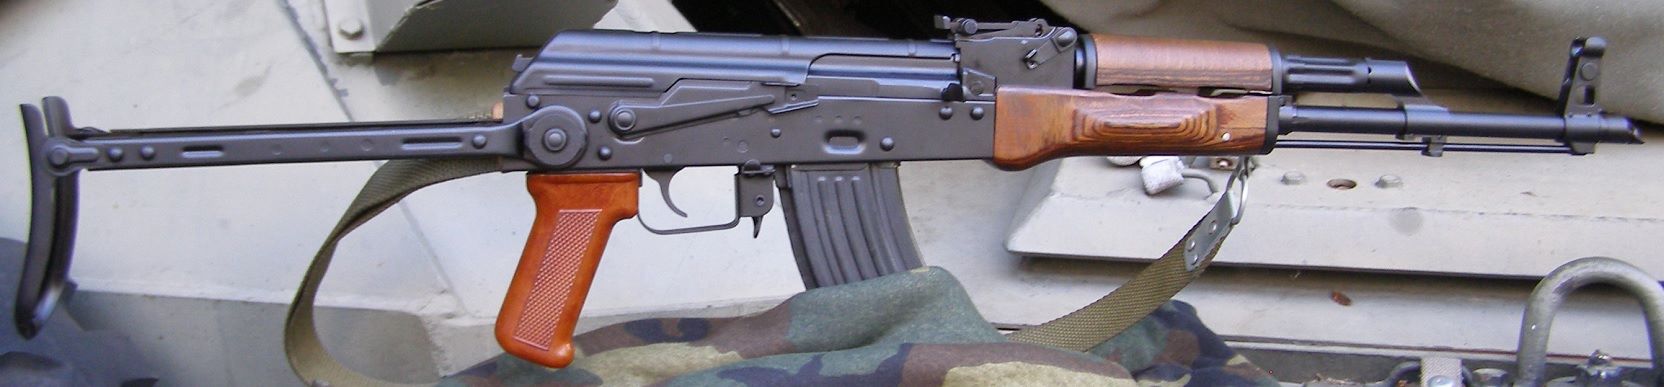 Polish Underfolder Rifle 12